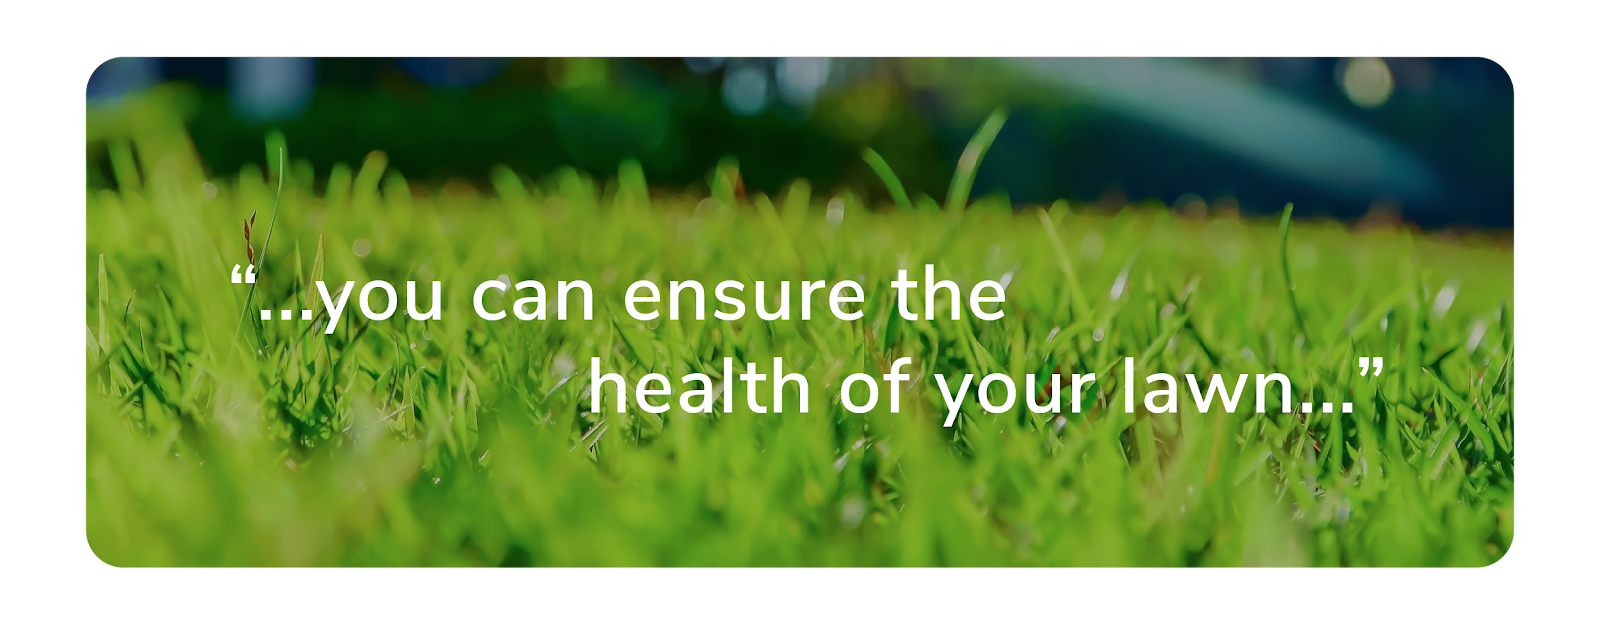 lawn health